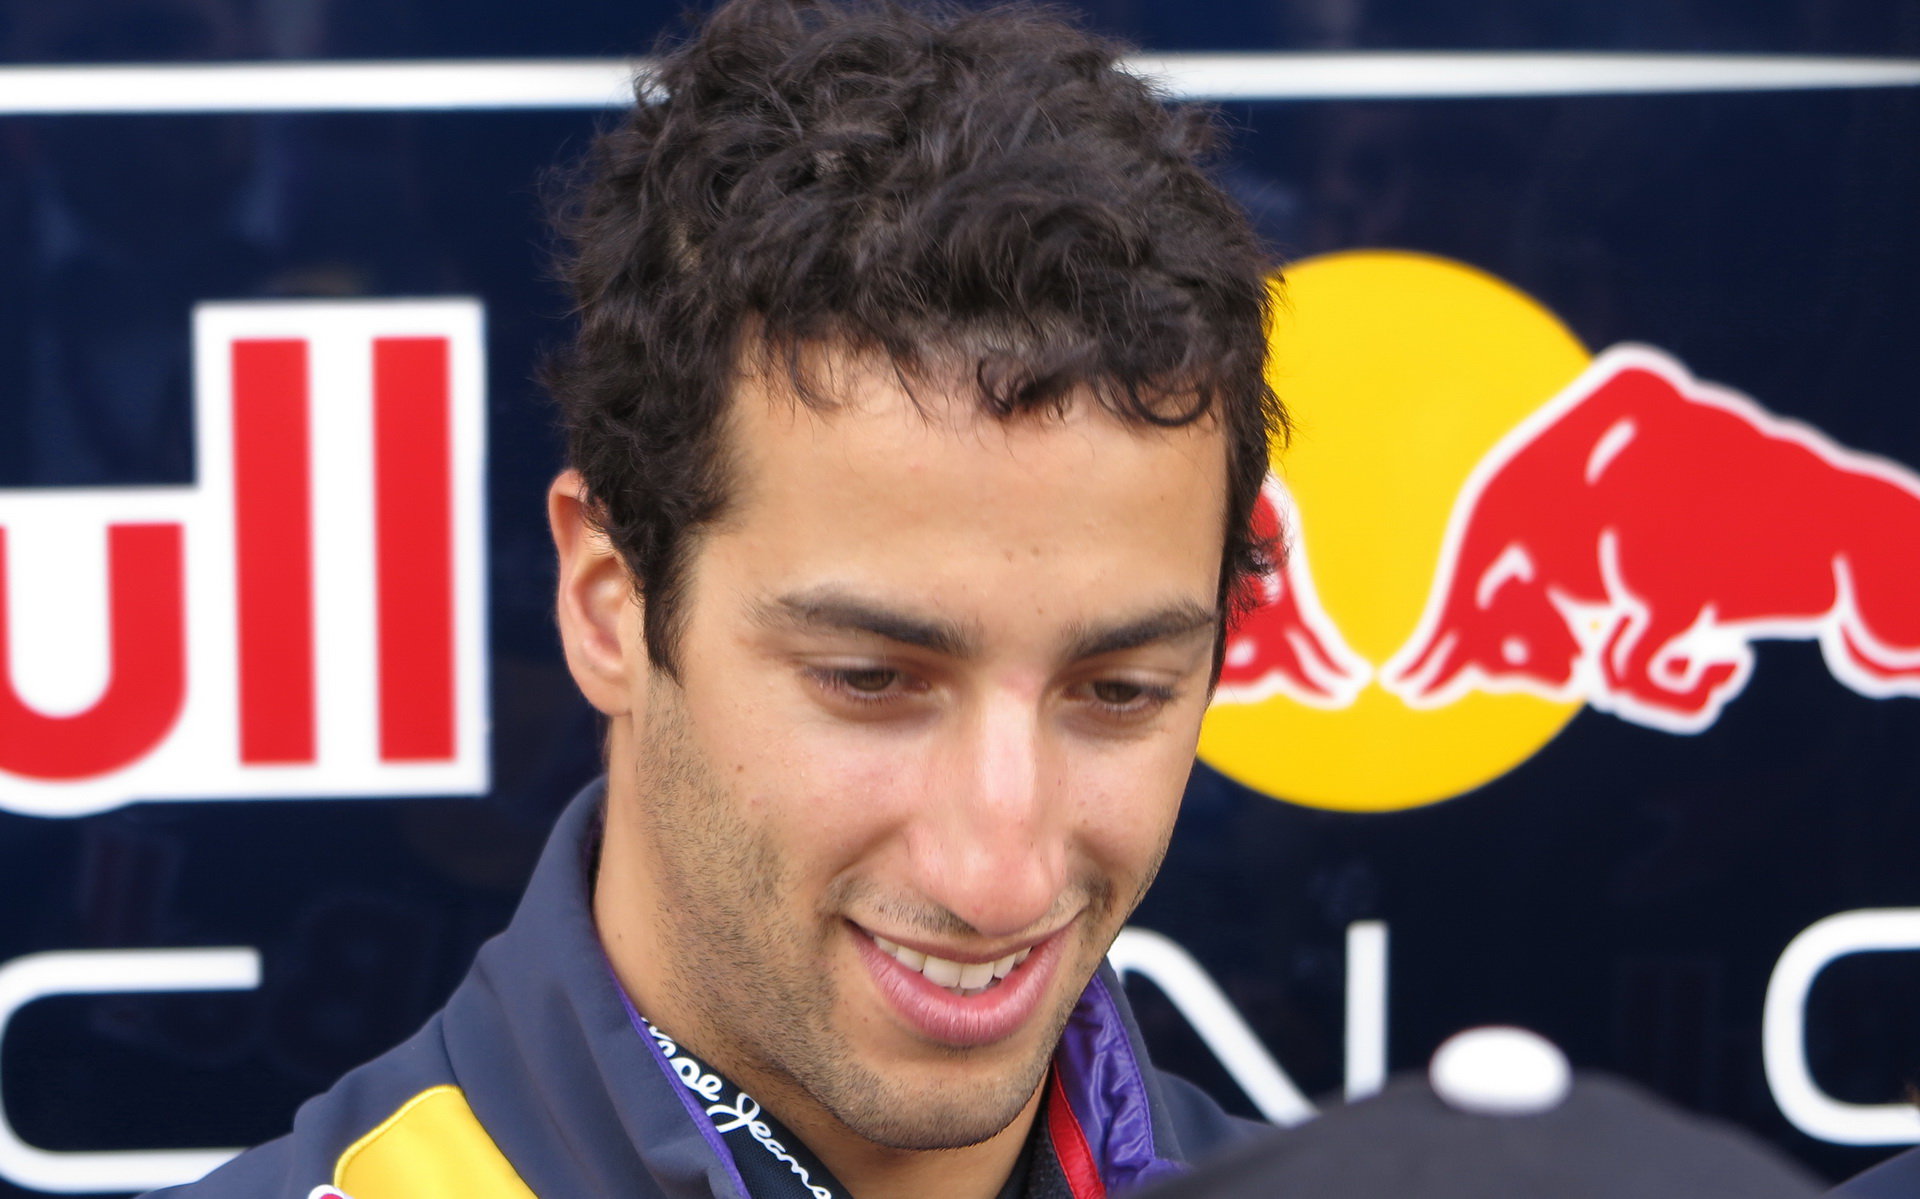 Je to vlastně zábava, hodnotí Ricciardo svou roli v případu Ferrari.